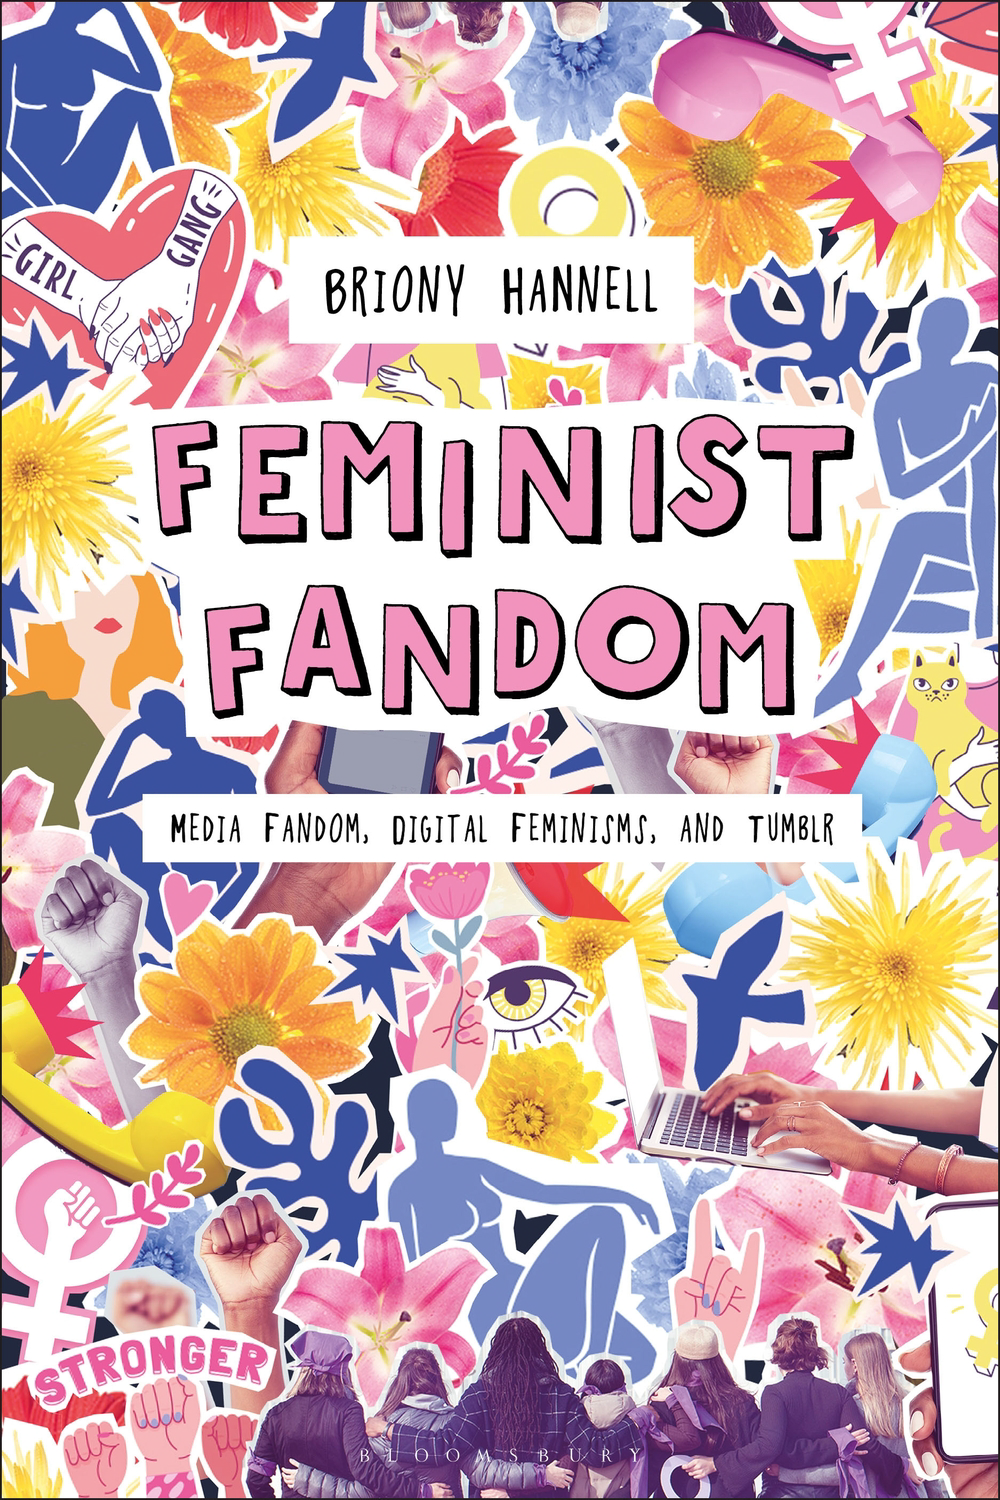 Feminist Fandom book cover. Featuring a DIY, feminine, collage aesthetic.